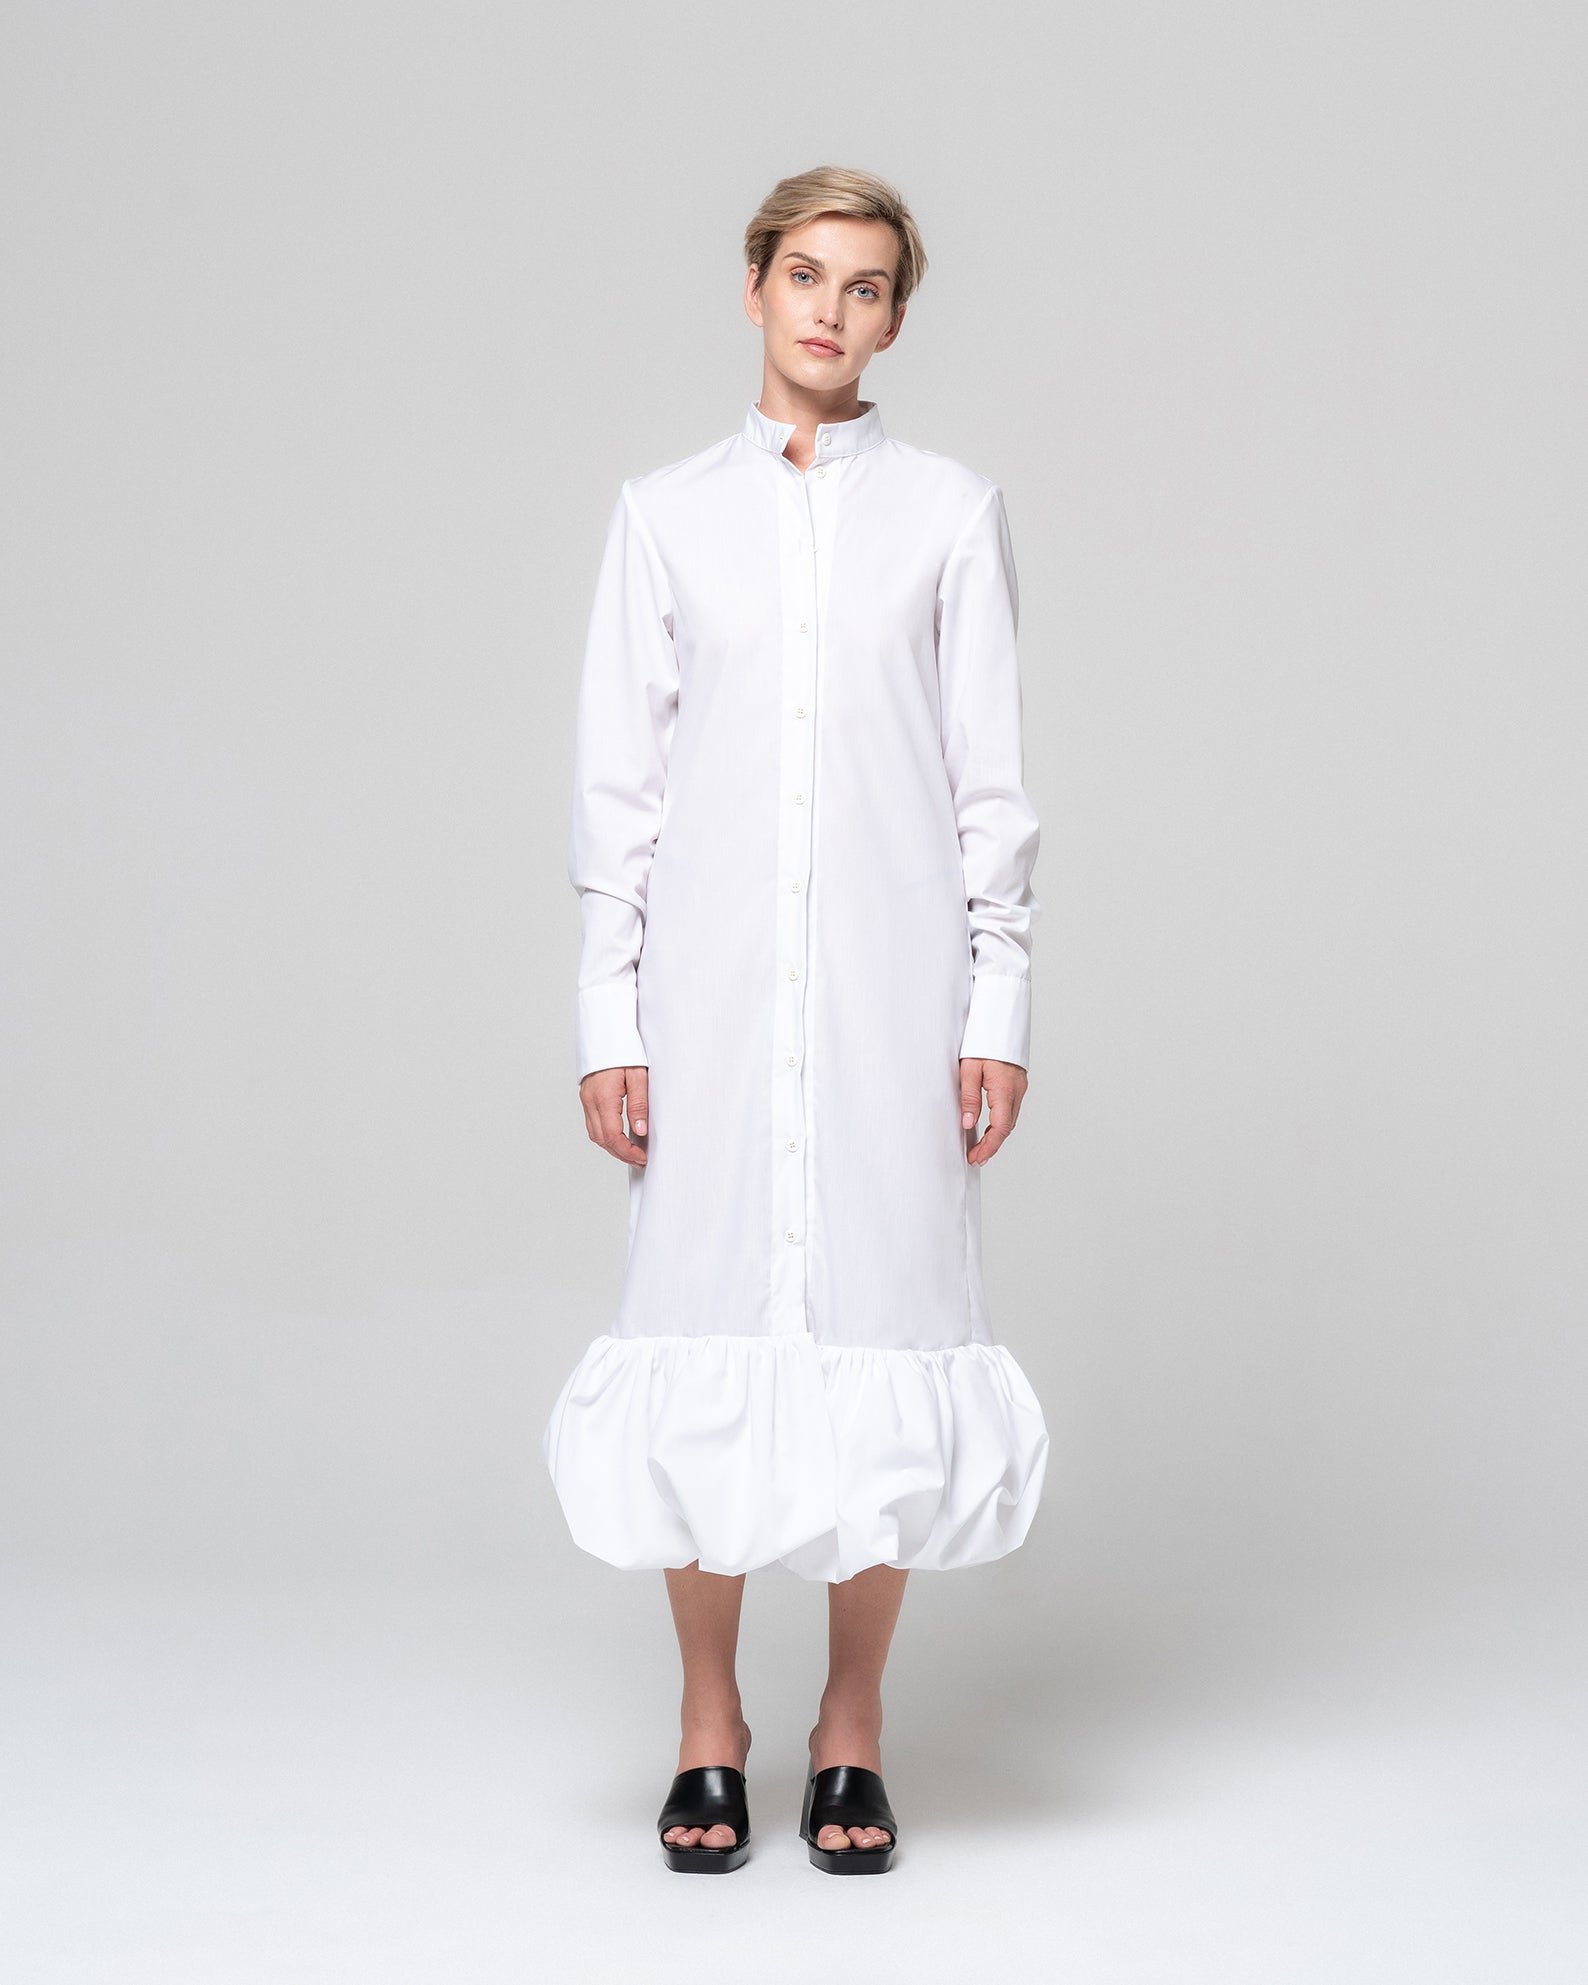 SOLA WHITE SHIRT DRESS - RONI HELOU